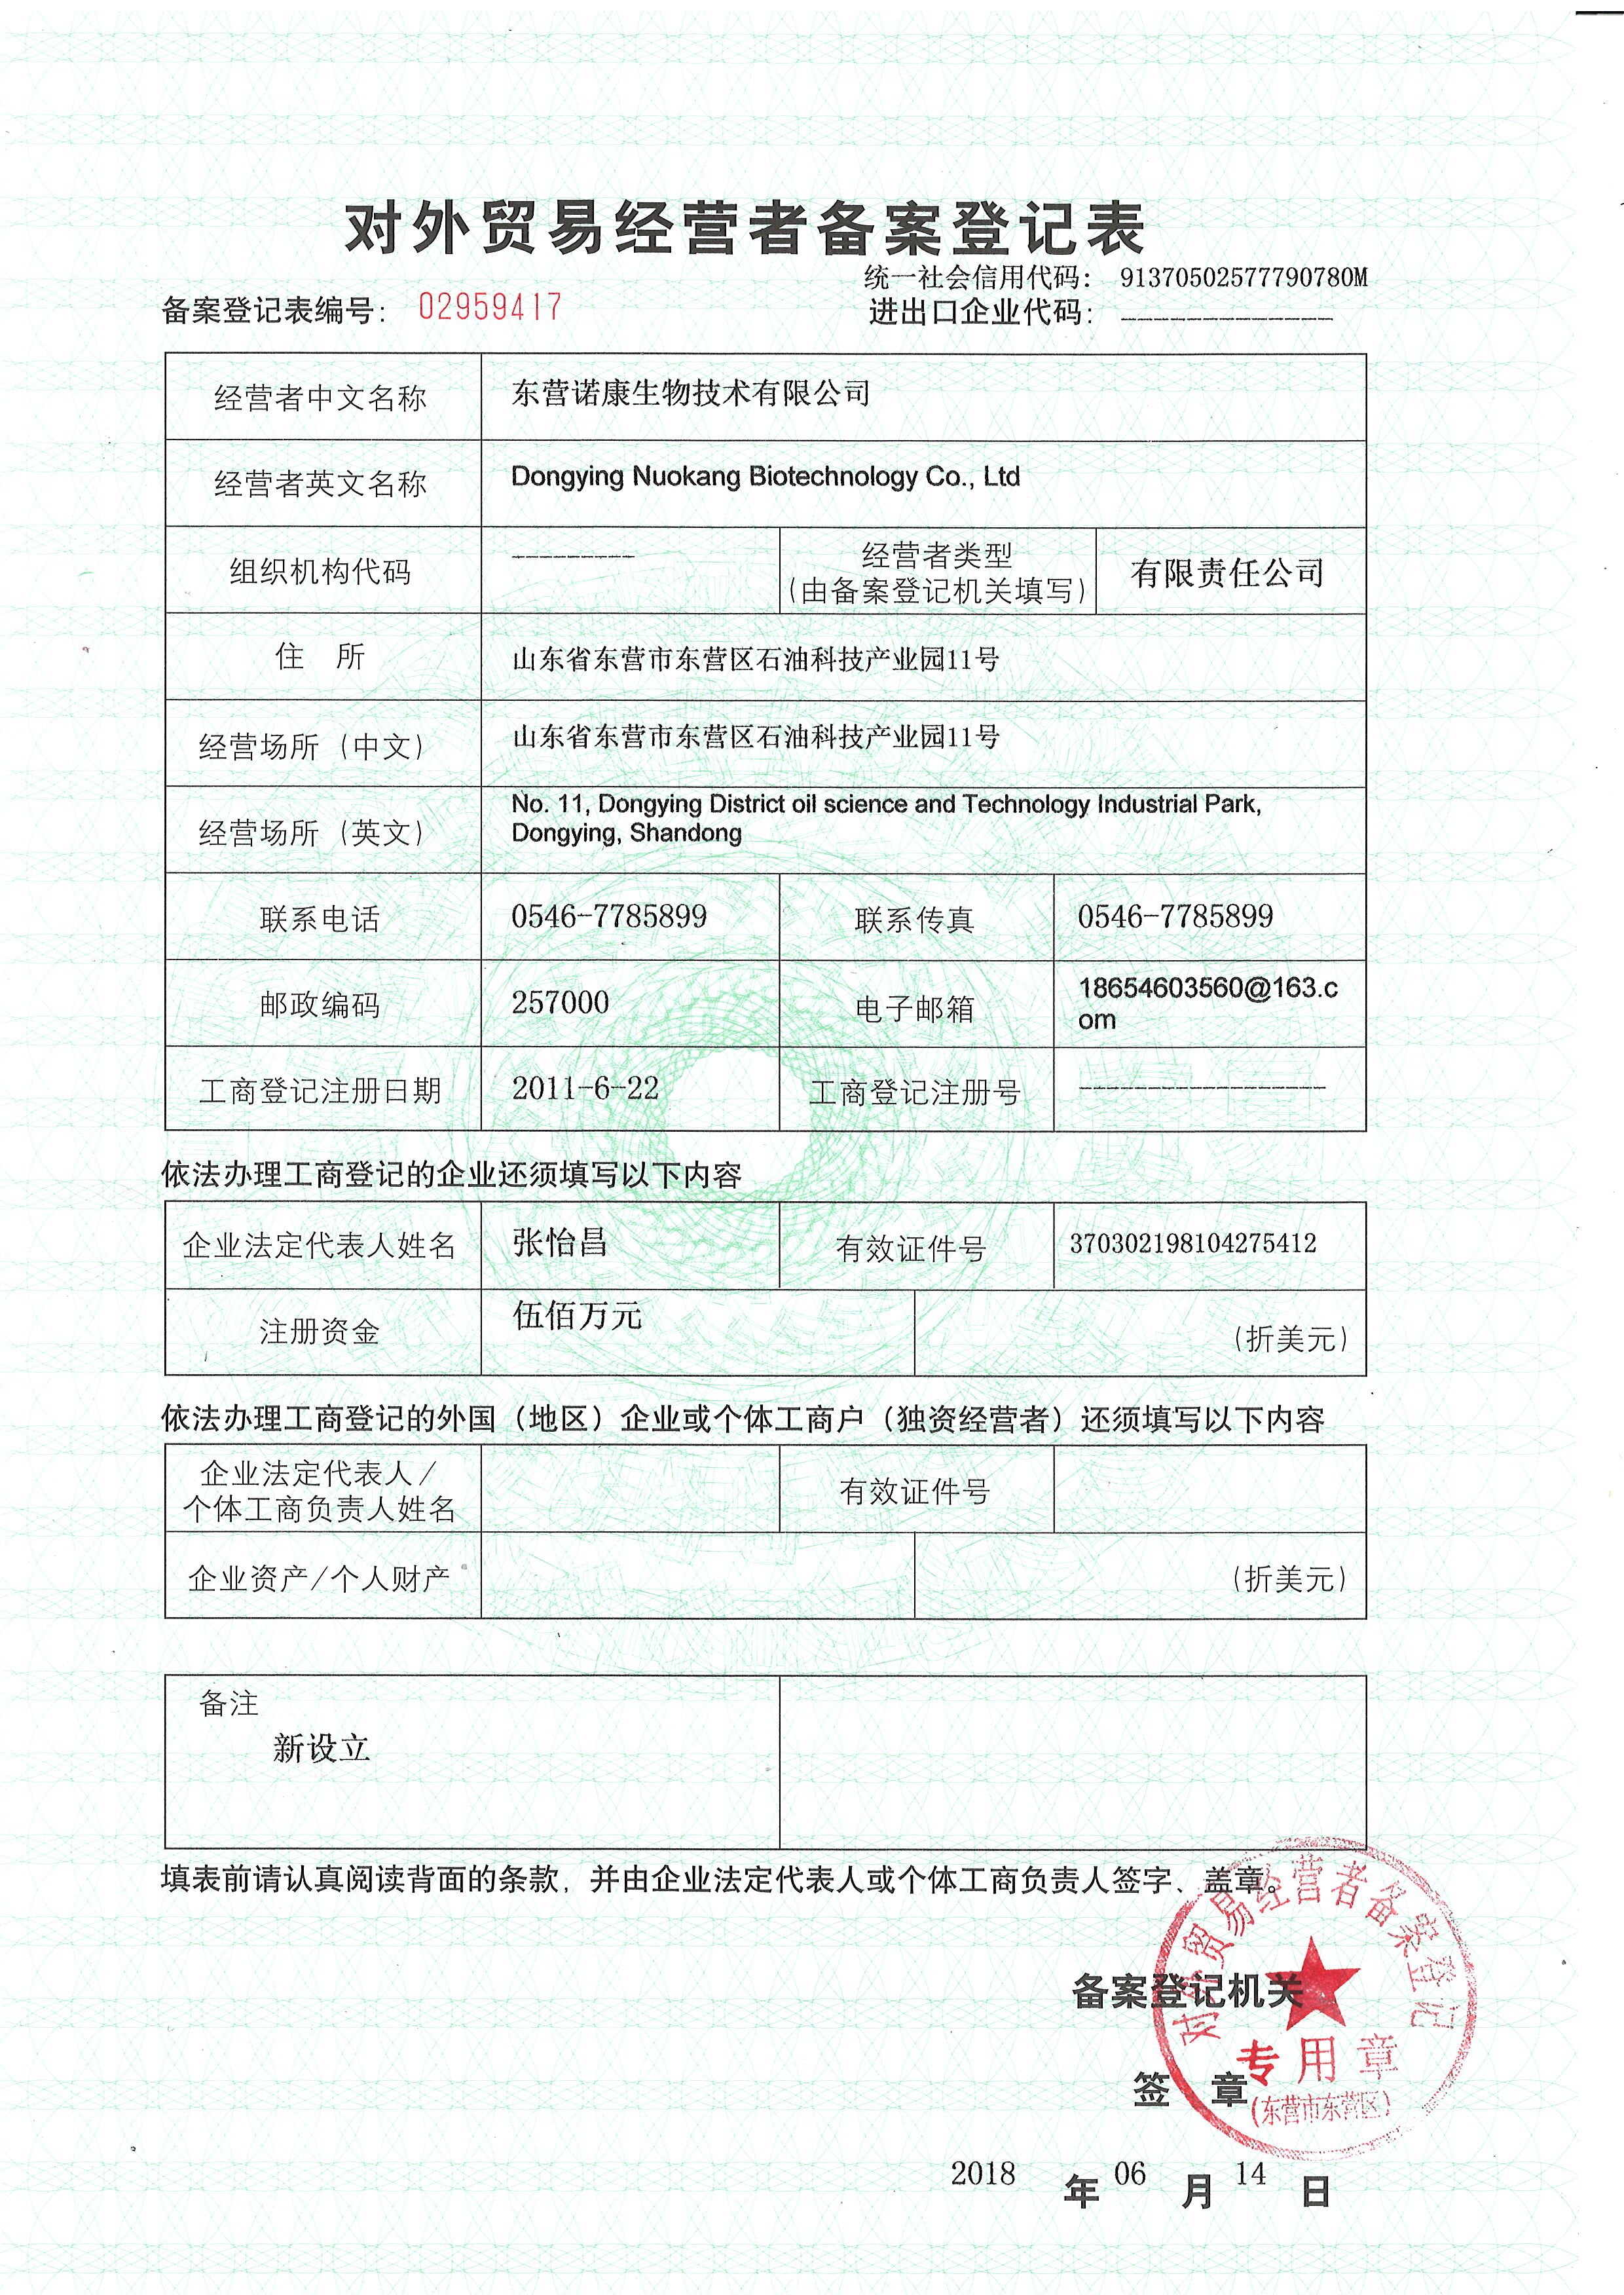 东营诺康生物技术有限公司对外贸易经营备案登记表.jpg